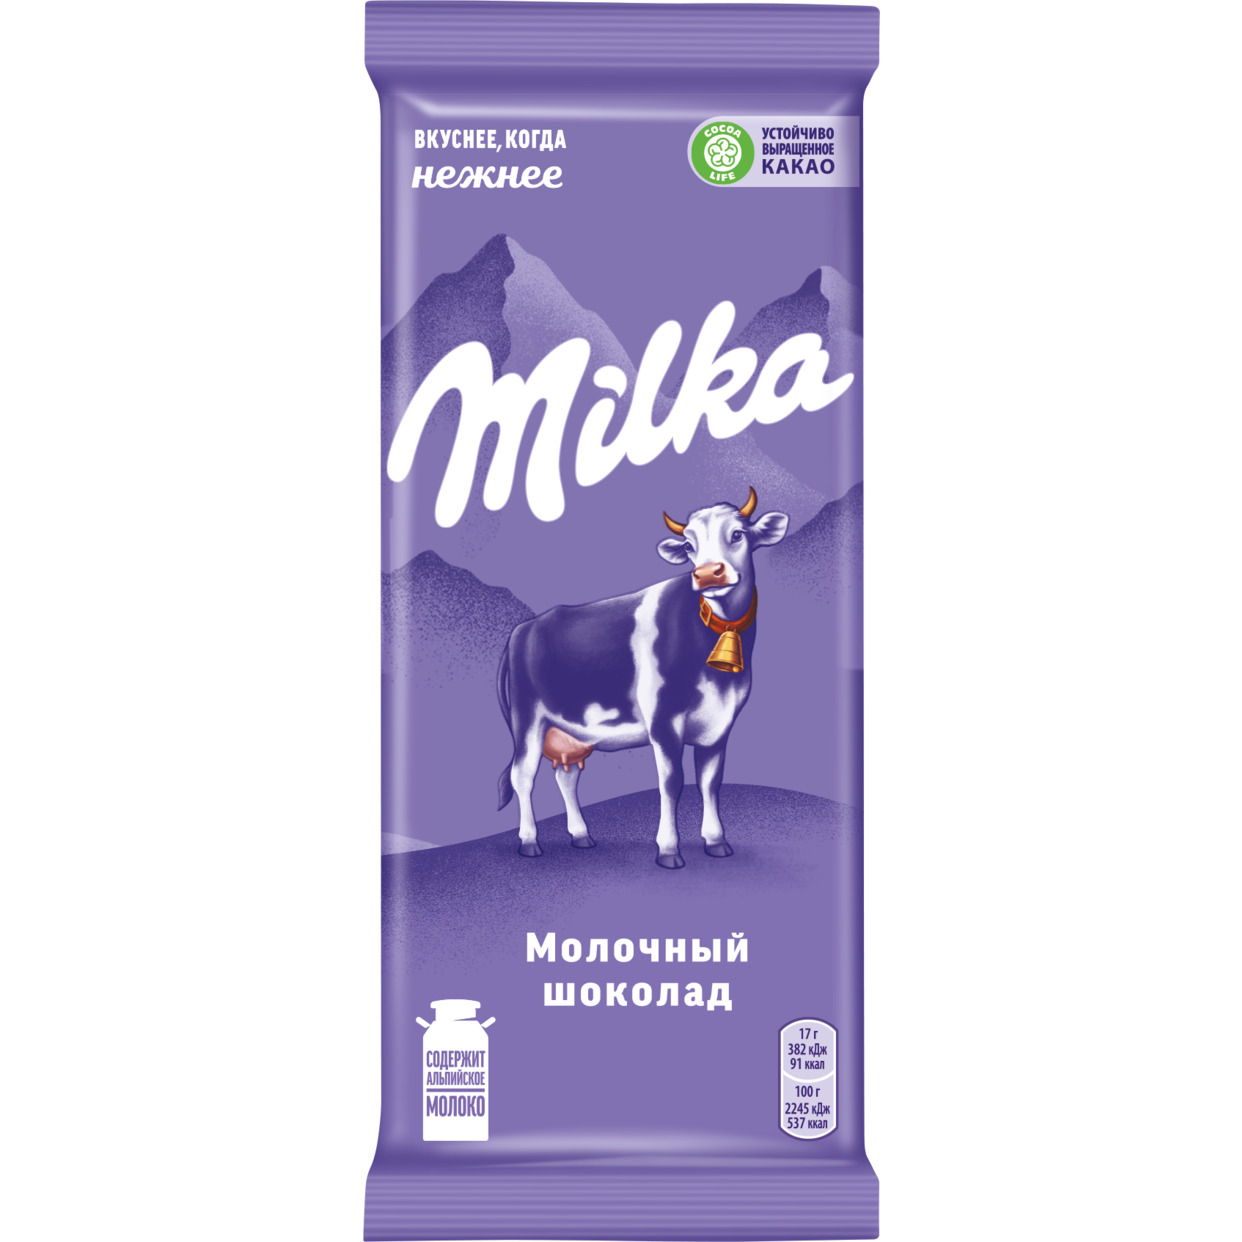 Шоколад молочный Милка, 85г по акции в Пятерочке